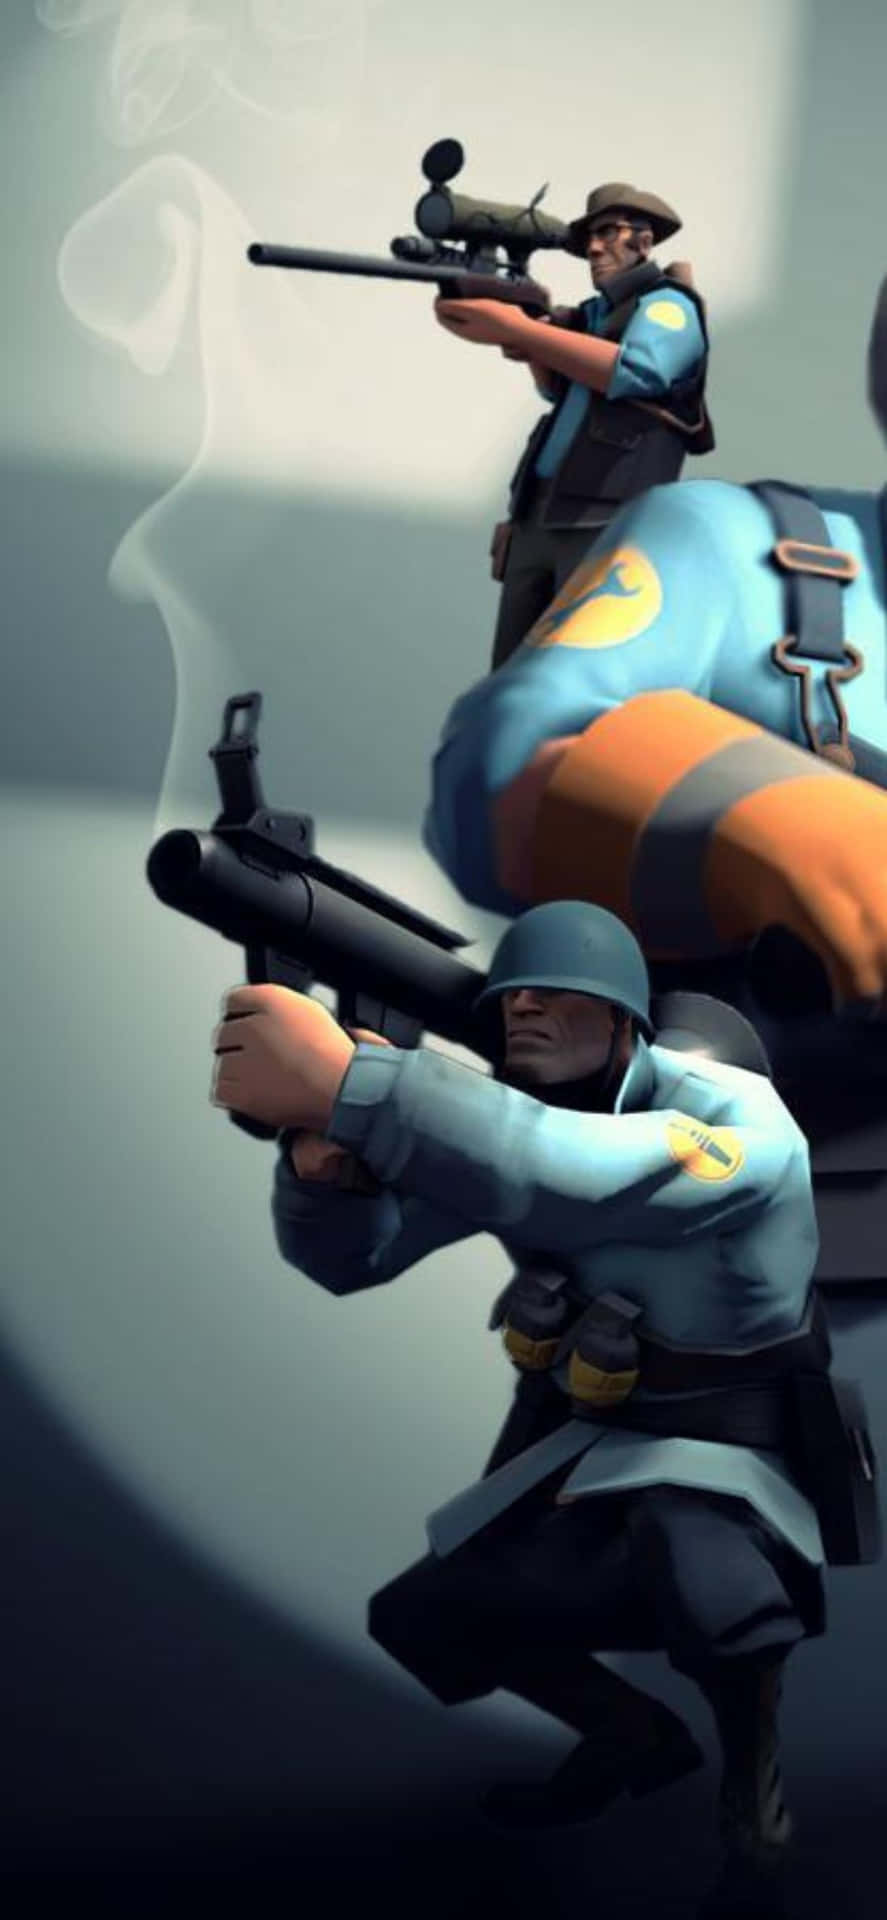 Iphonexs Hintergrund Mit Team Fortress 2 Charakteren In Blauer Uniform